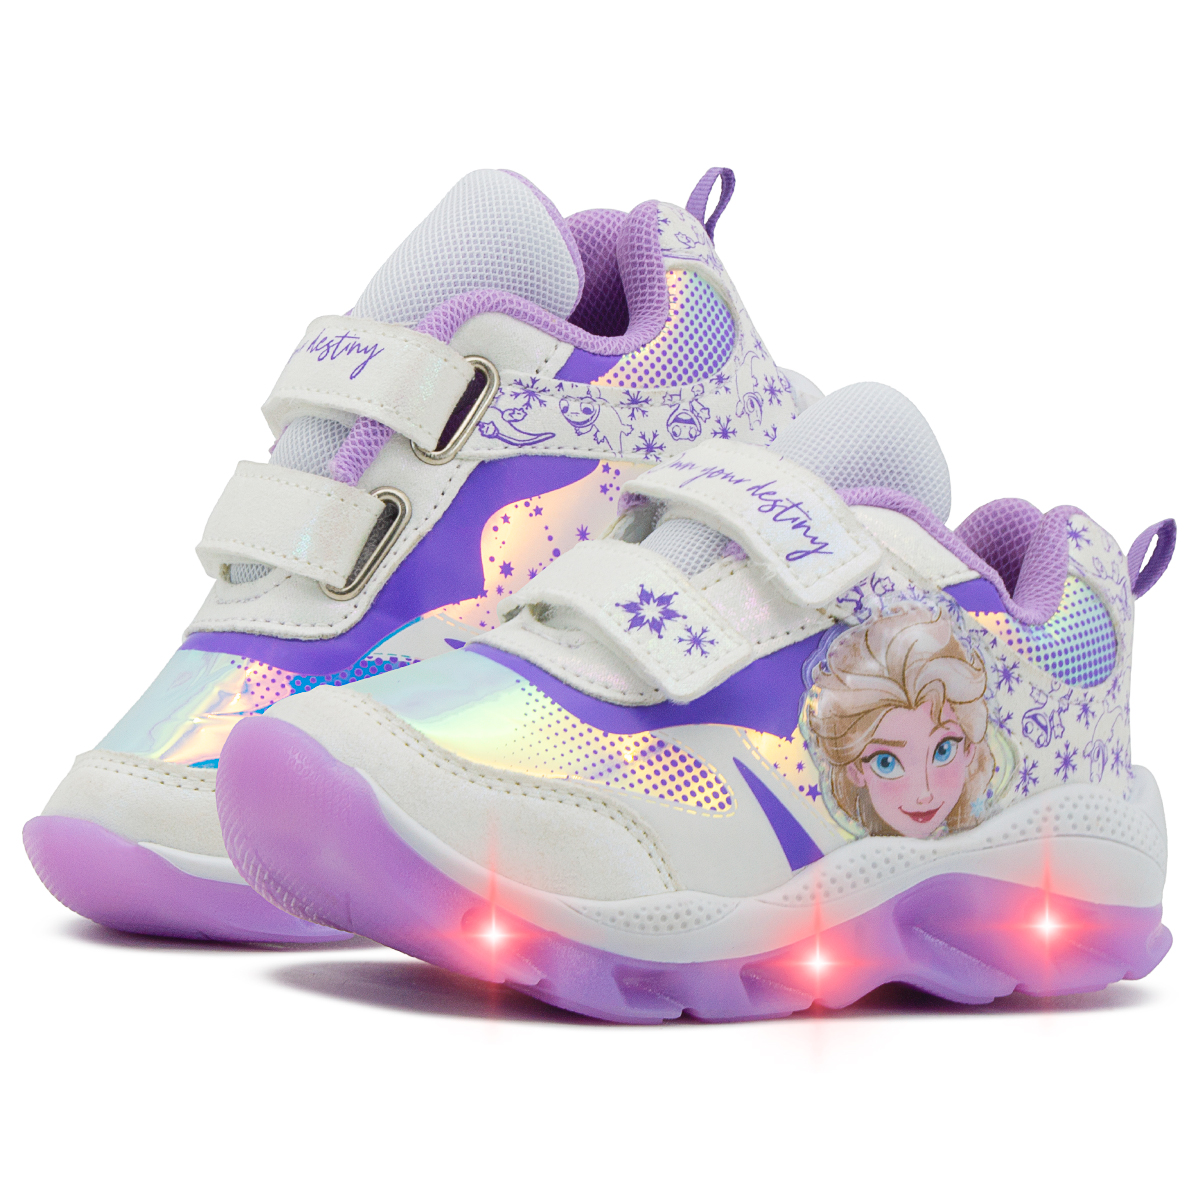 Disney's new Frozen elsa Sophia princesa zapatos niñas zapatillas pu zapatos  casuales luces led runn Gao Jinjia LED